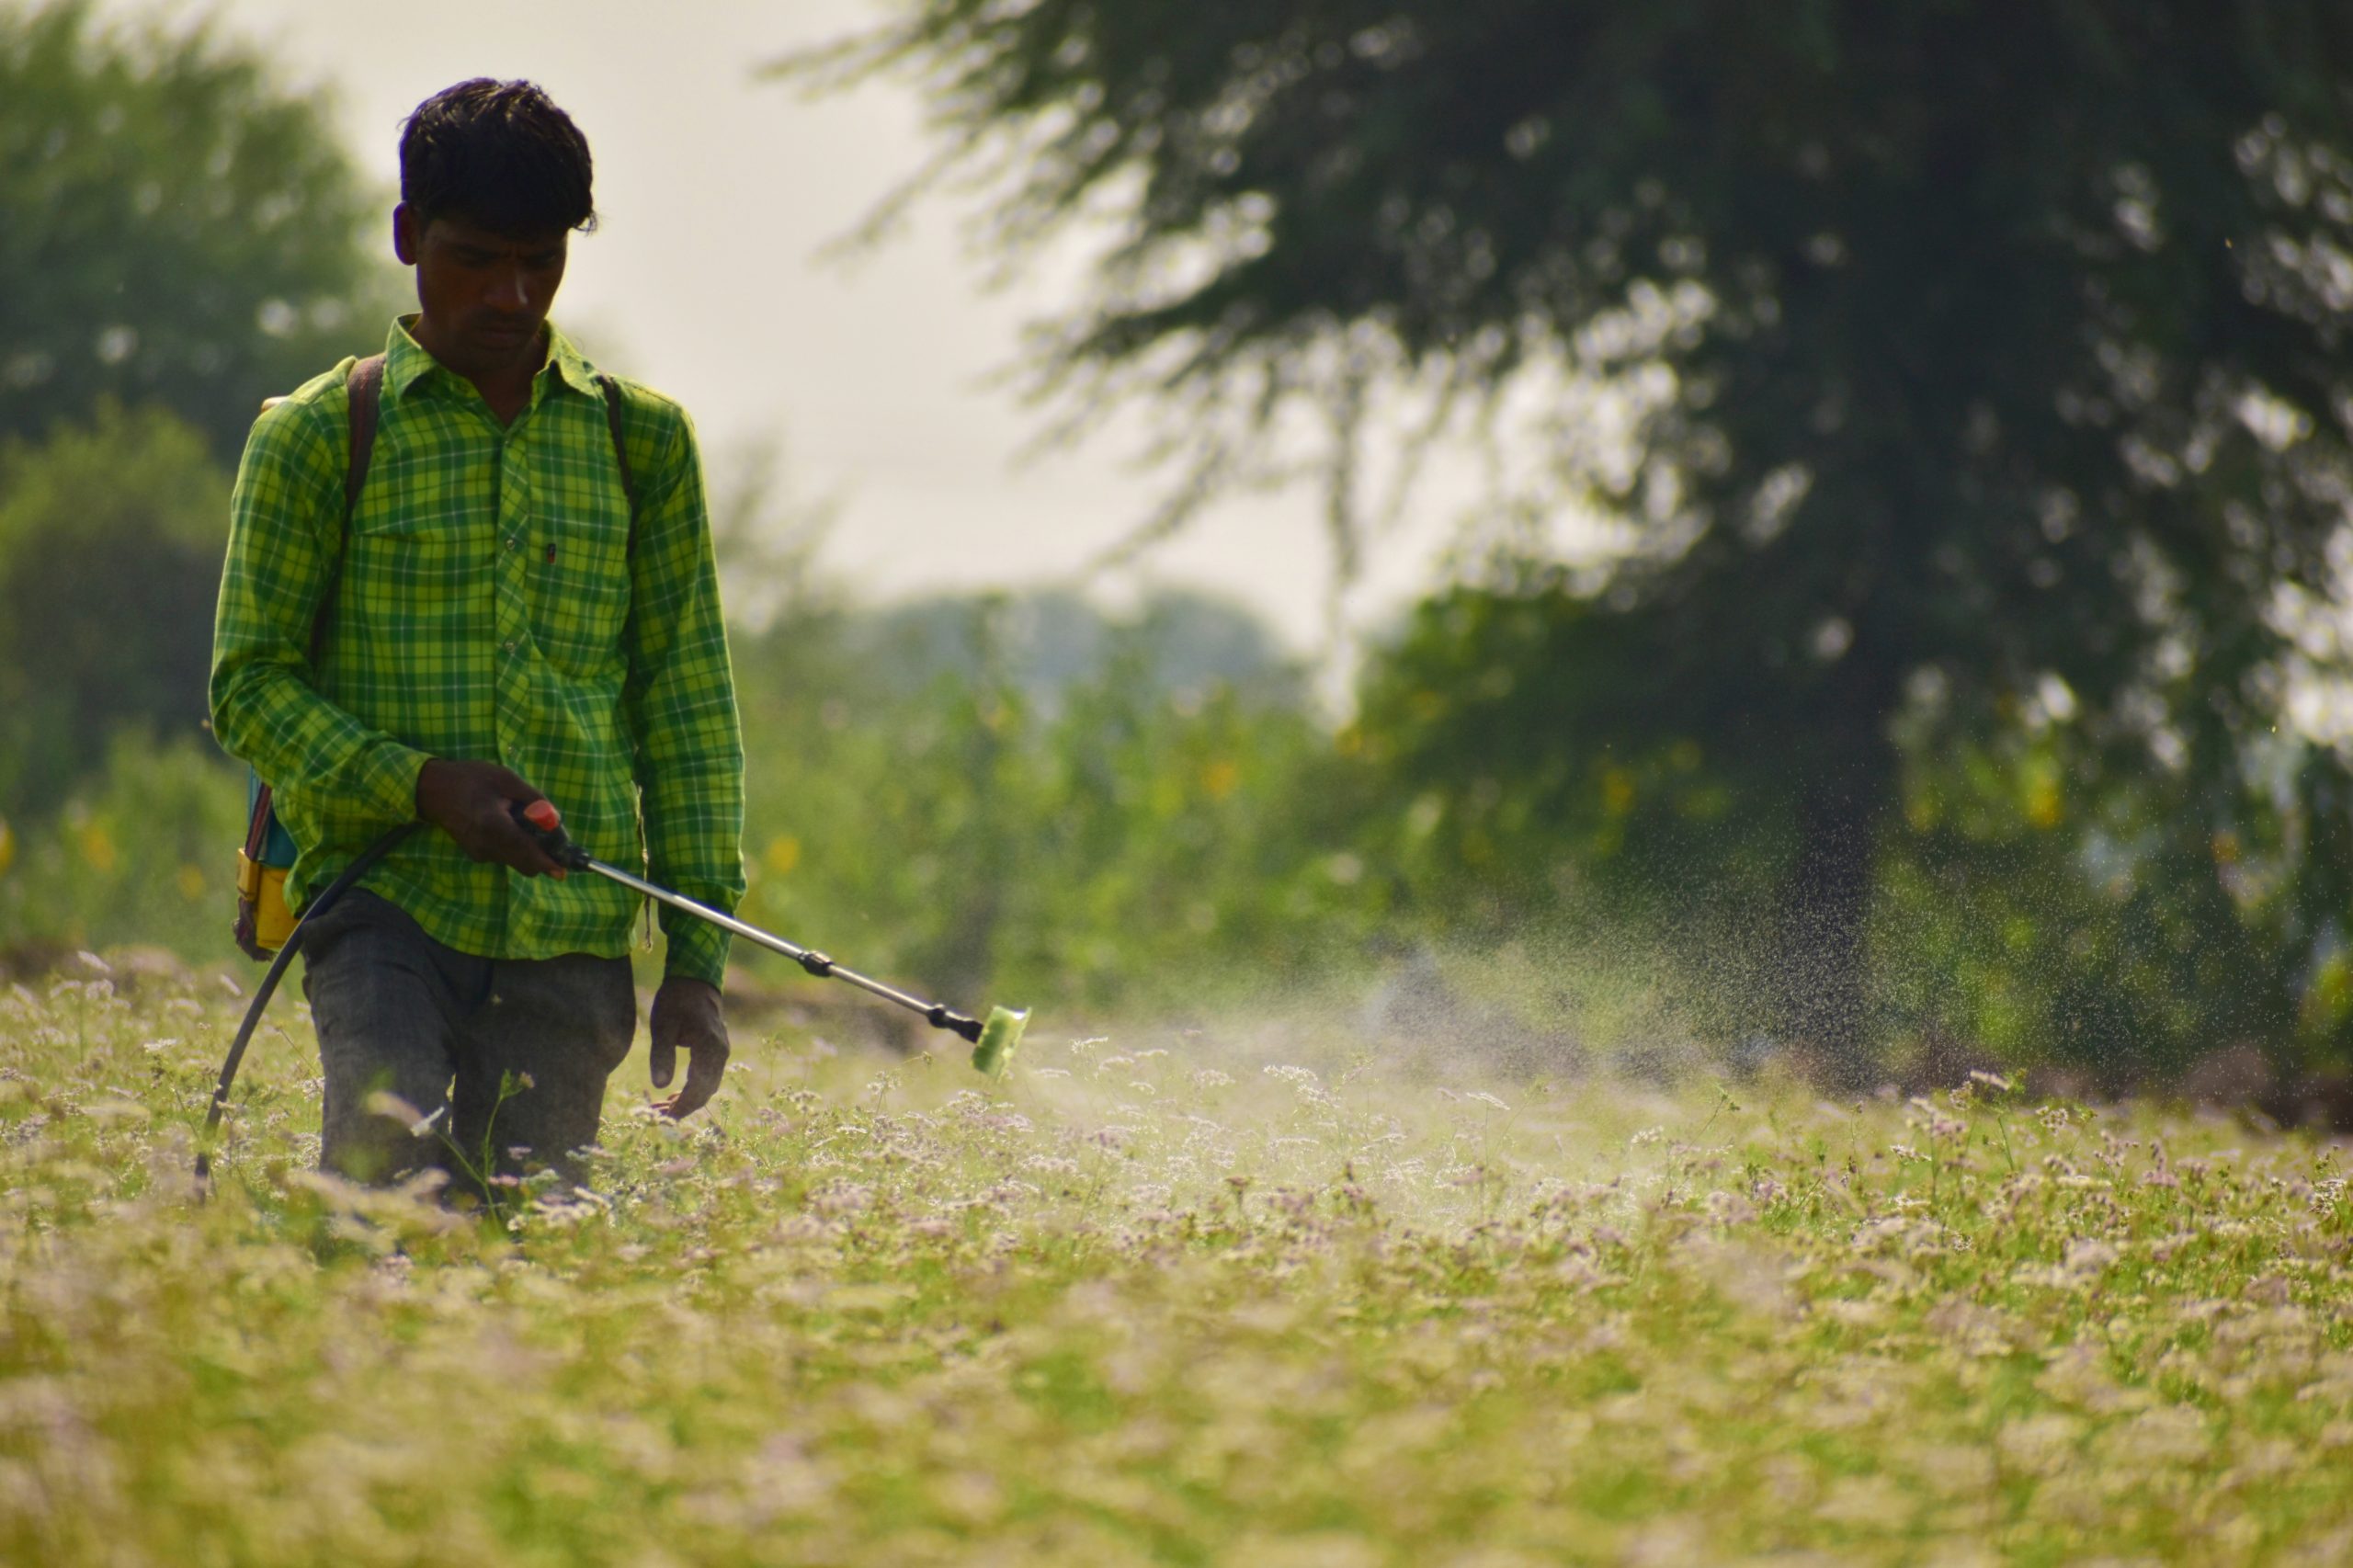 A farmer spraying pesticides in a field